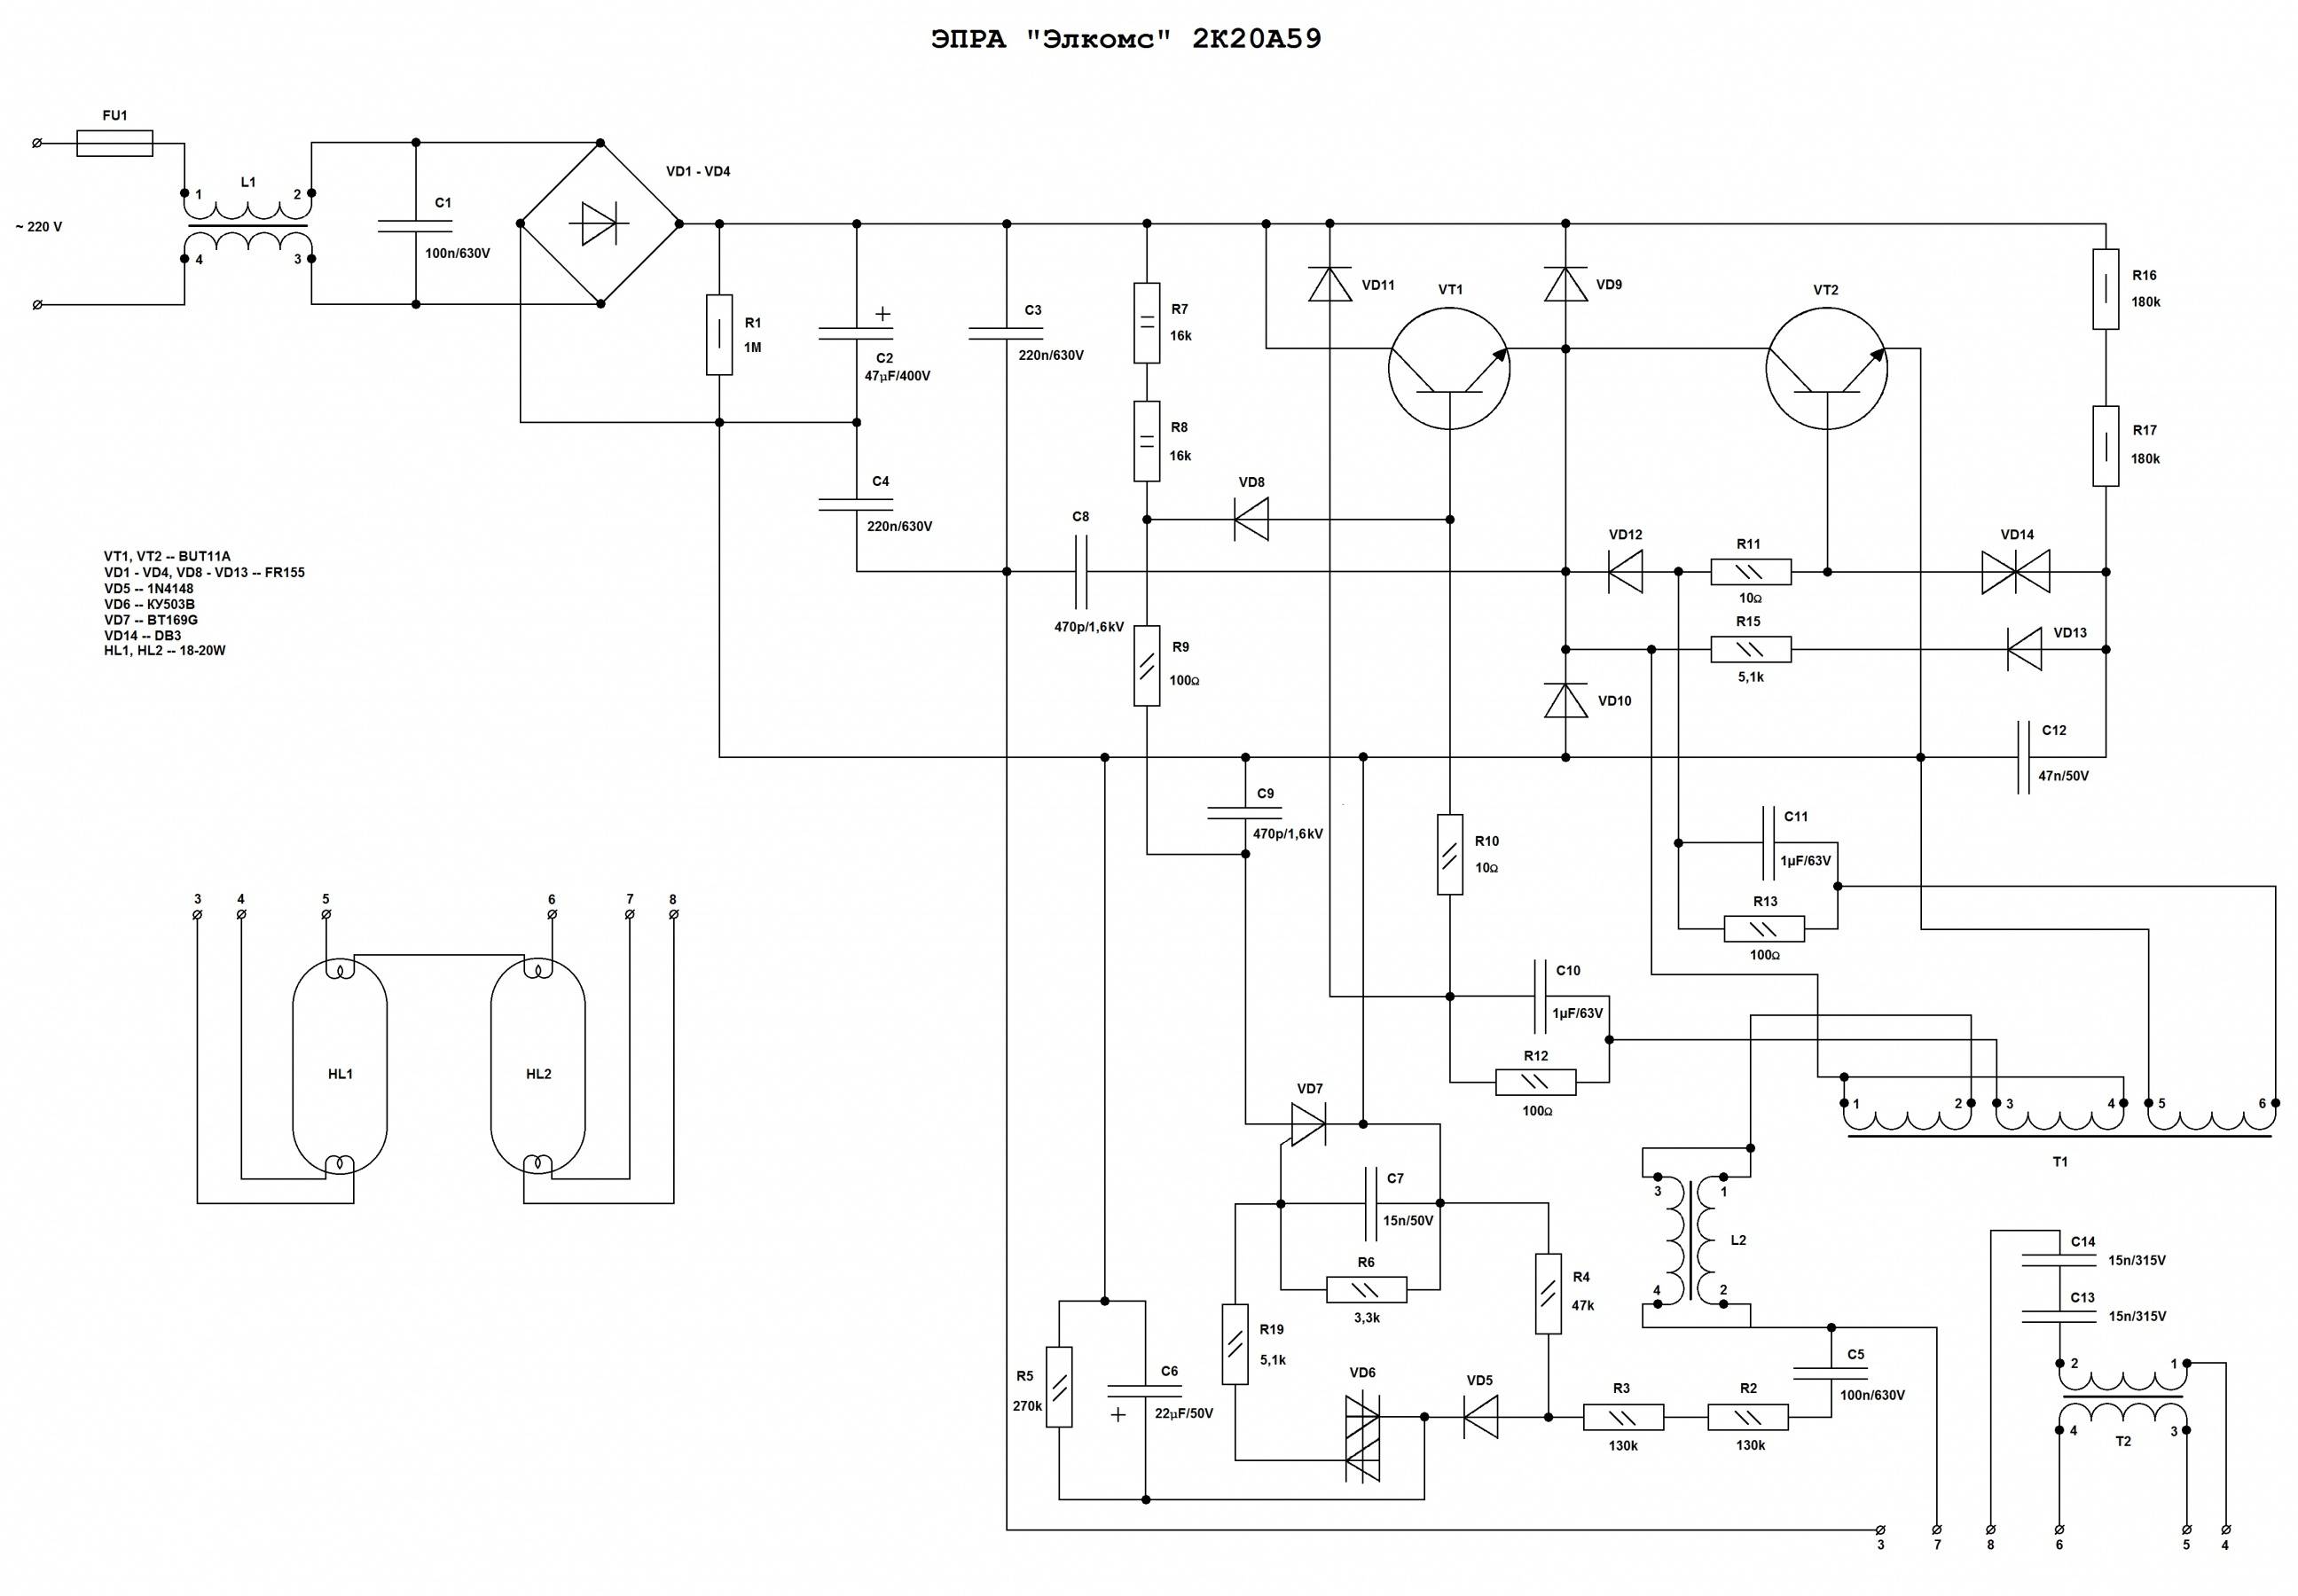 Электронный балласт - устройство, ремонт и схема подключения для люминисцентных ламп